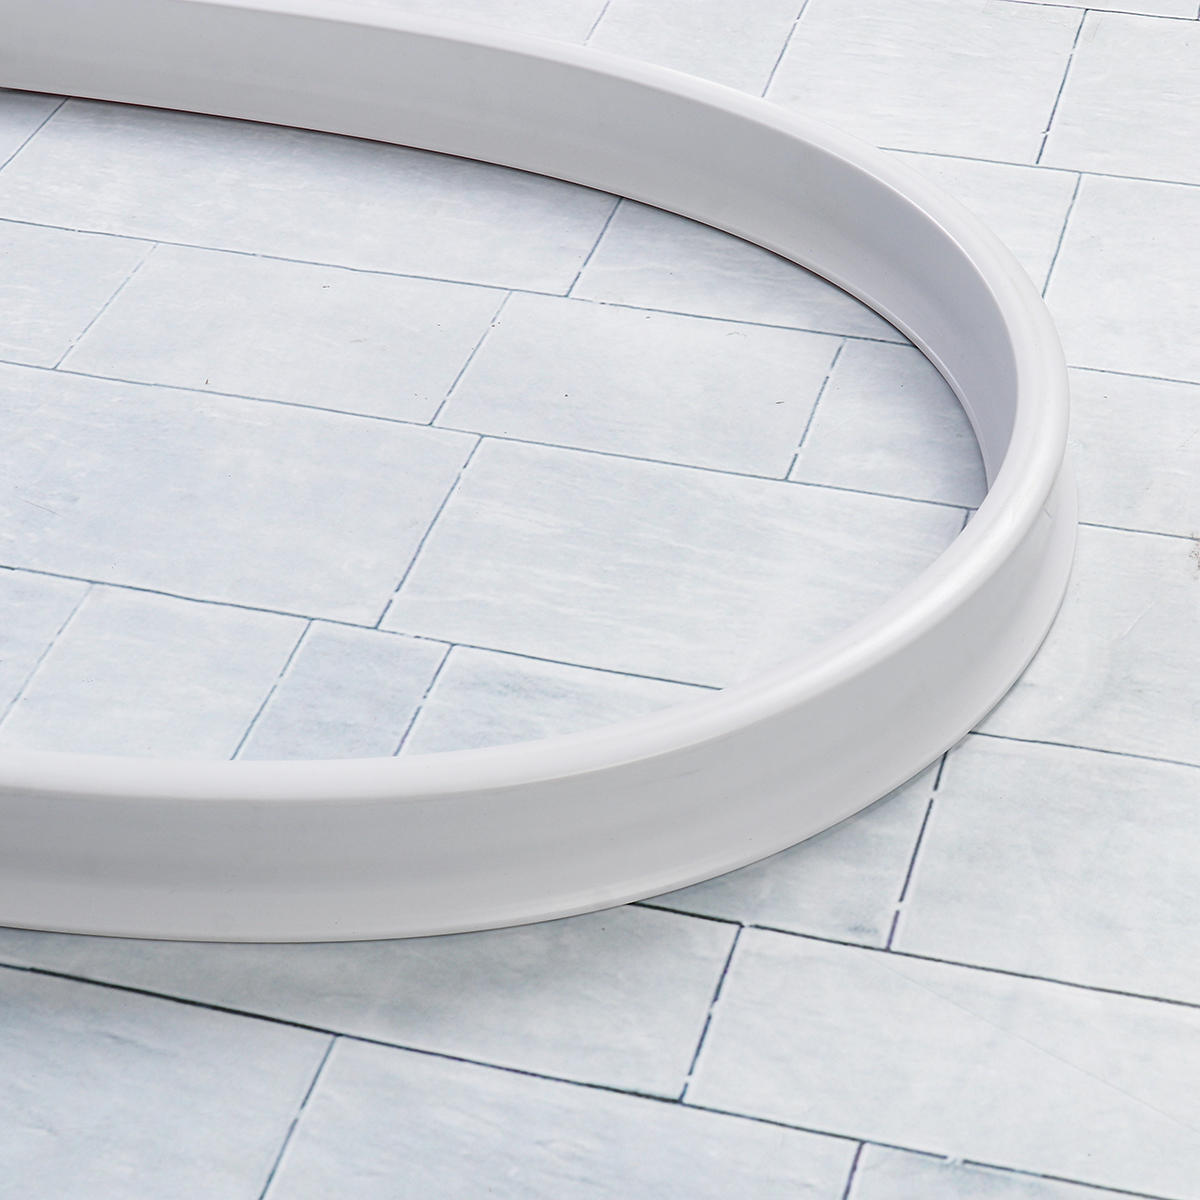 0.5m-1.5m flexible Cuarto de baño Tapón de agua de cocina Tira de retención Ducha Sellado de barrera